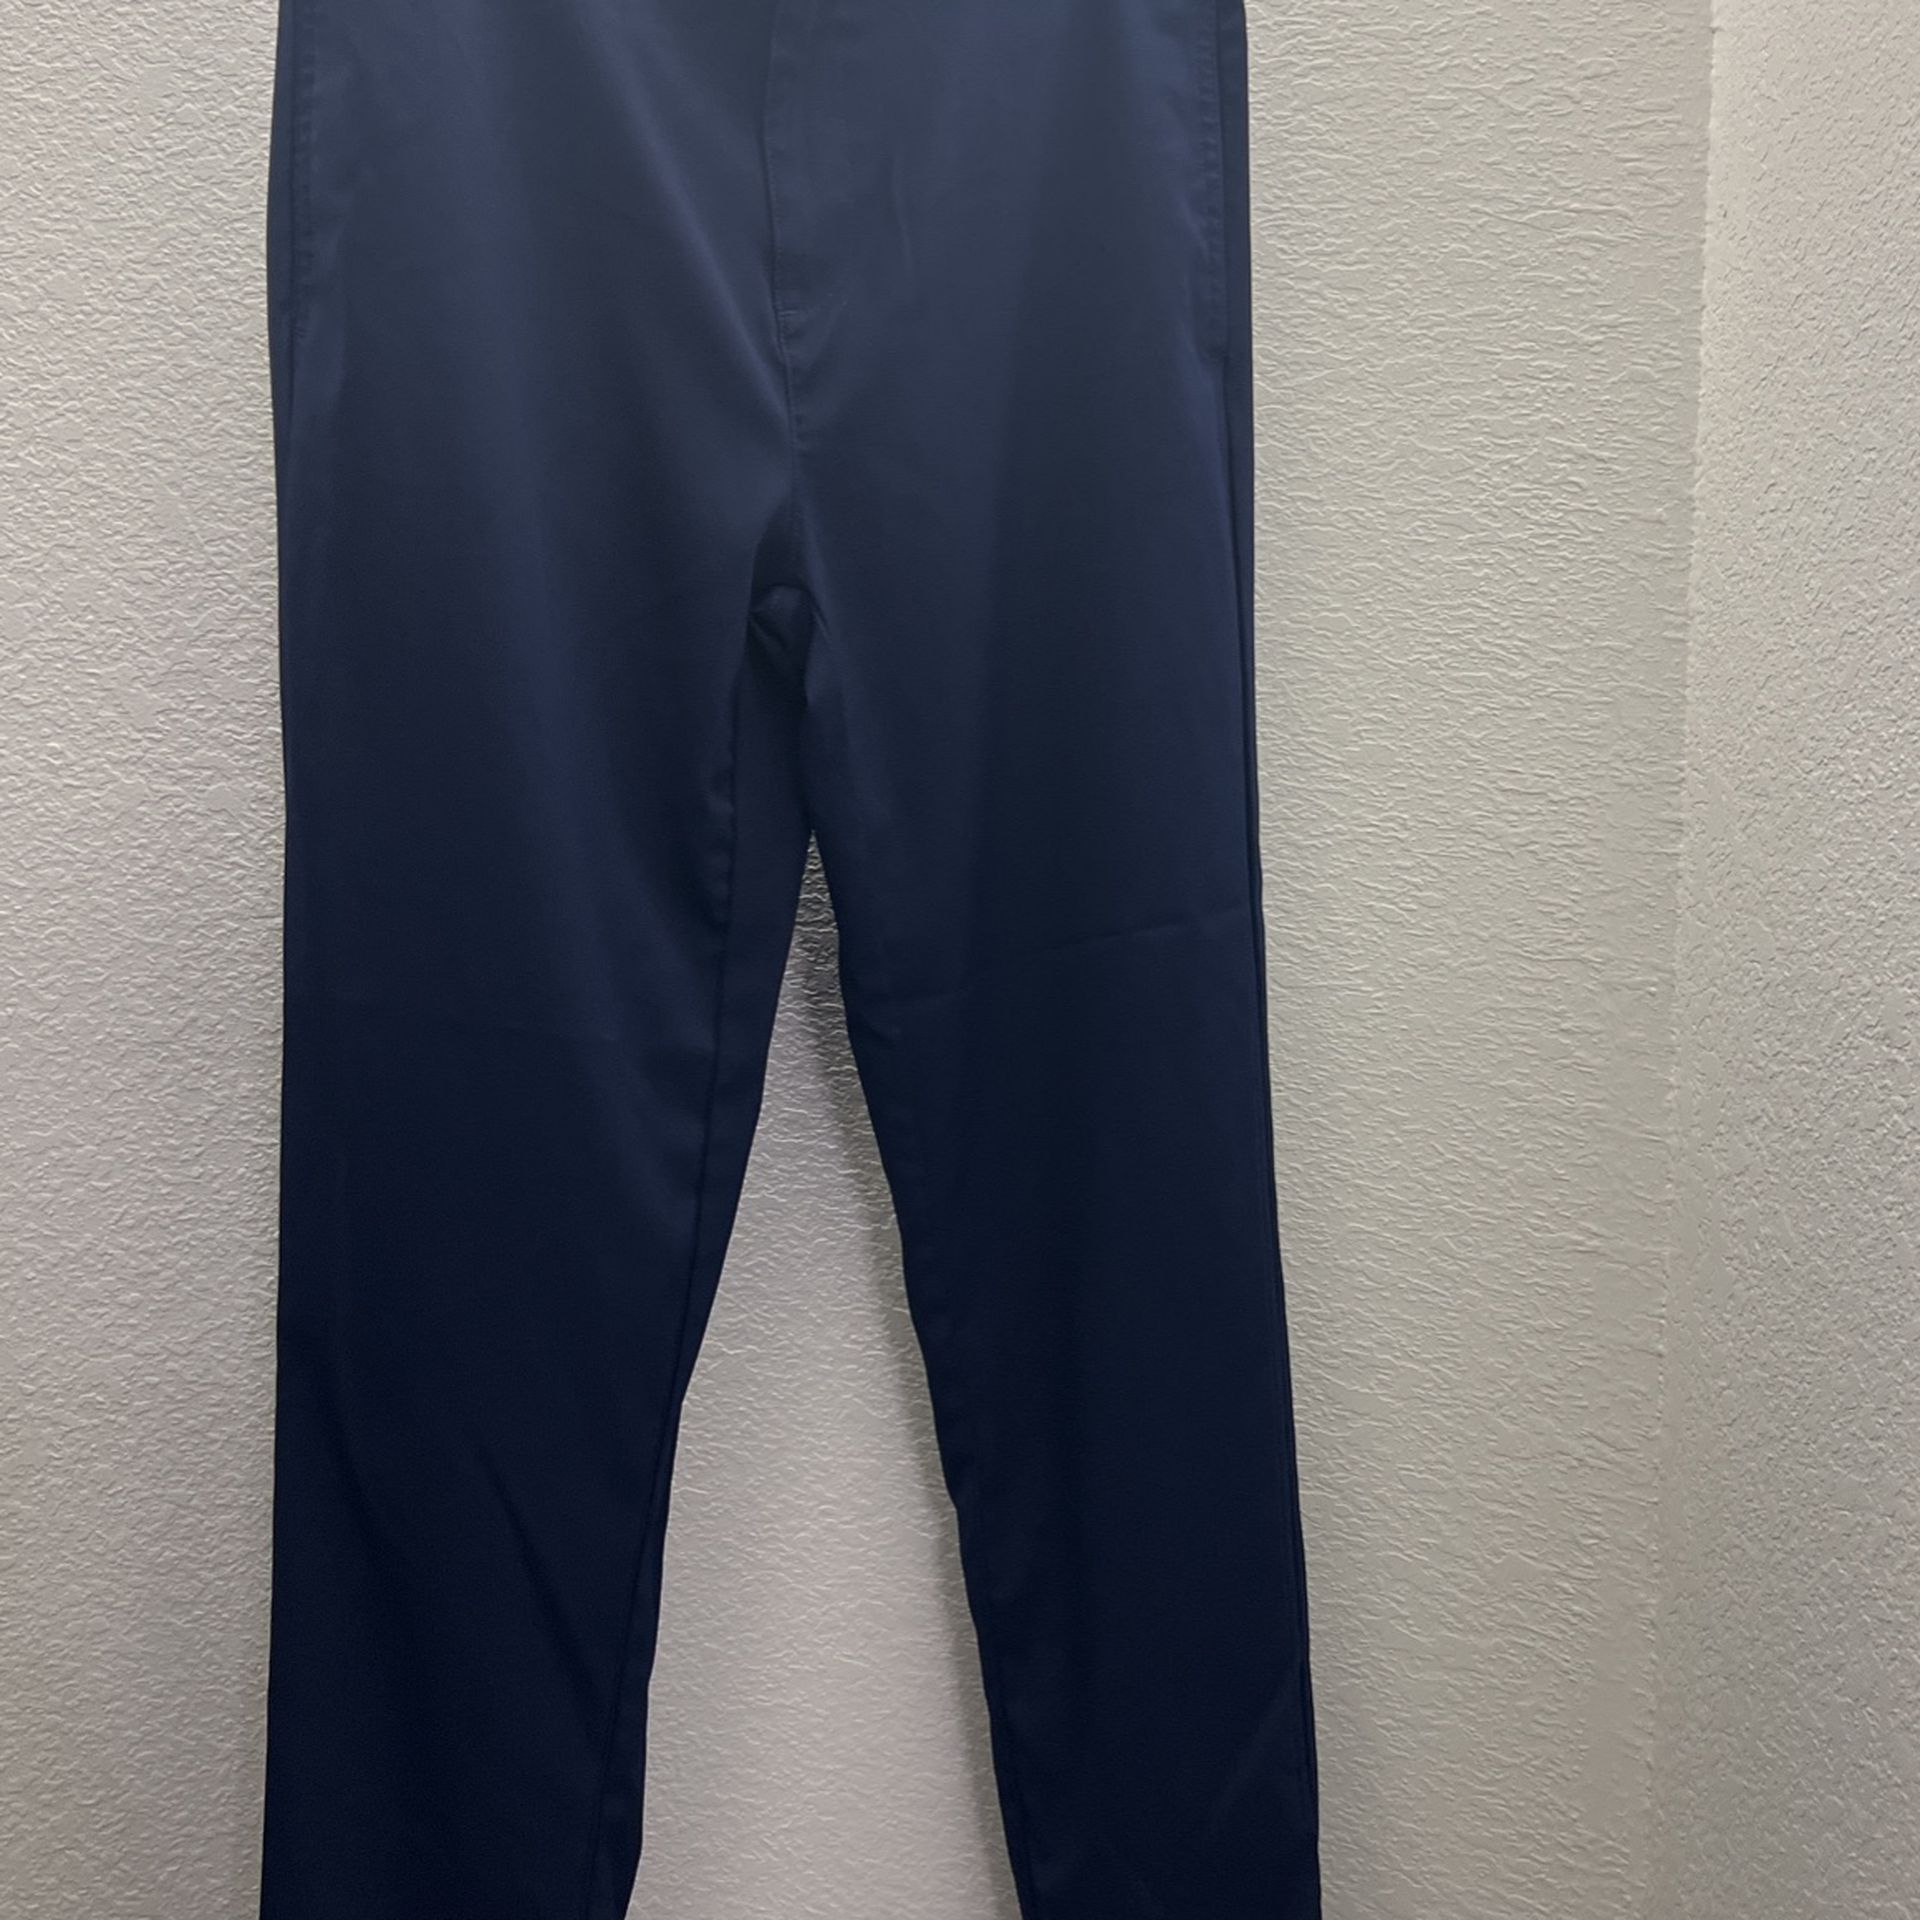 Boys XL Blue Golf Pants